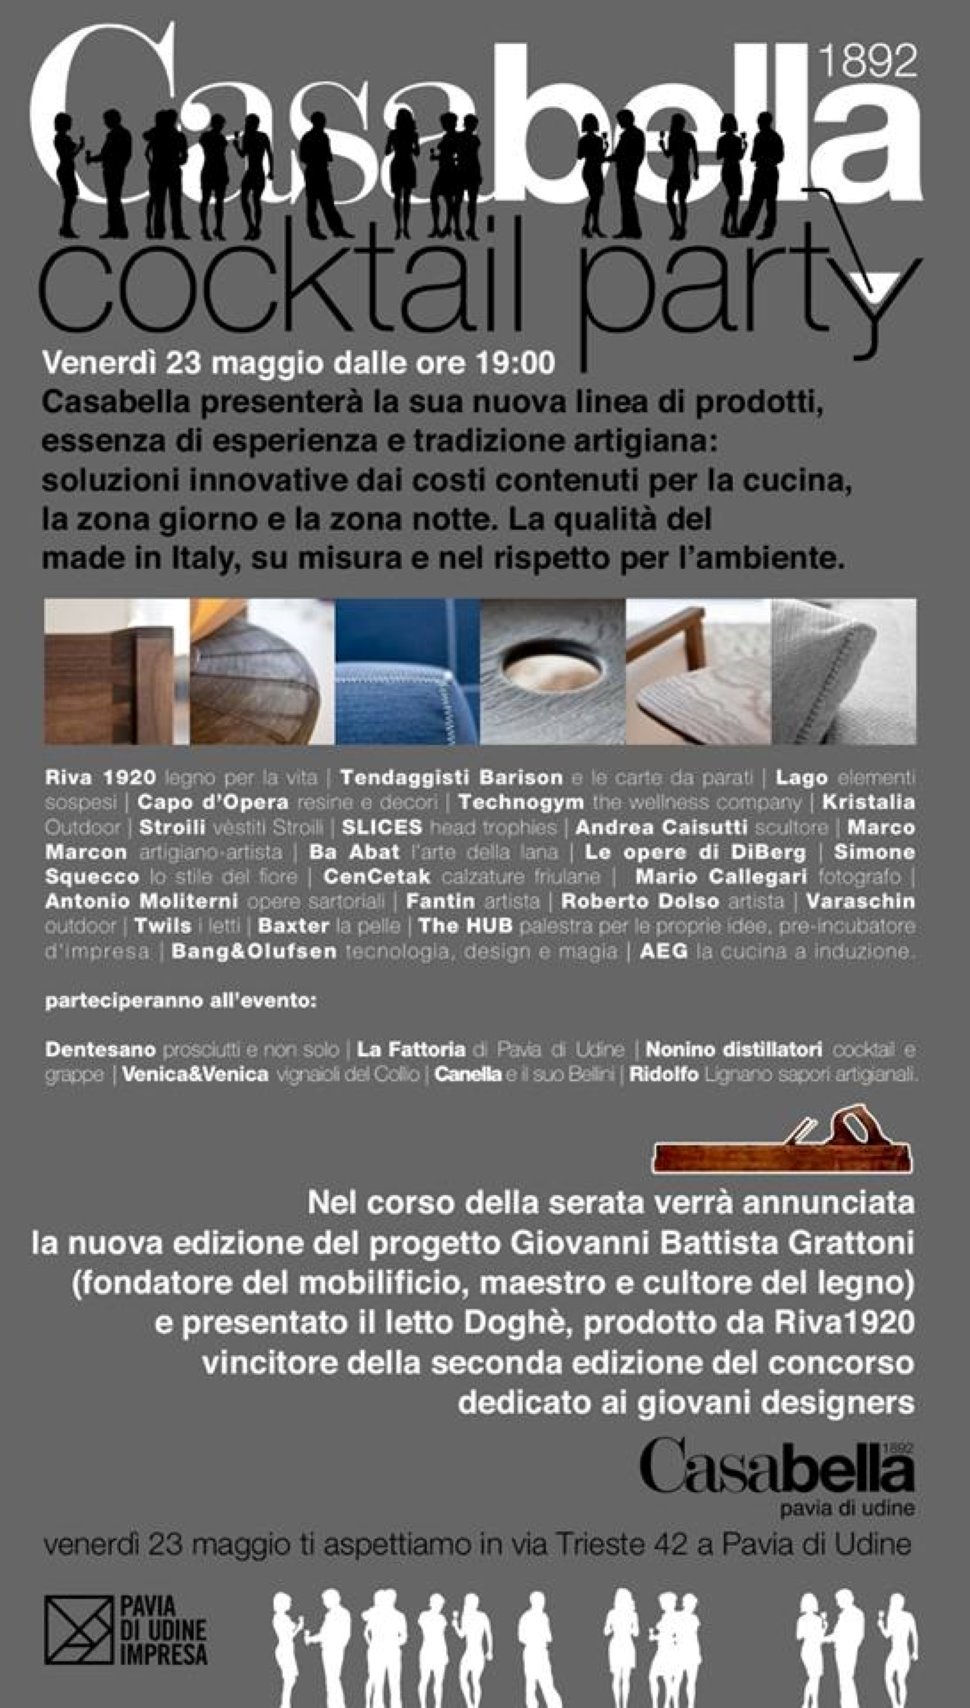 Casabella COCKTAIL PARTY - Presentazione nuova edizione Progetto Giovanni Battista Grattoni